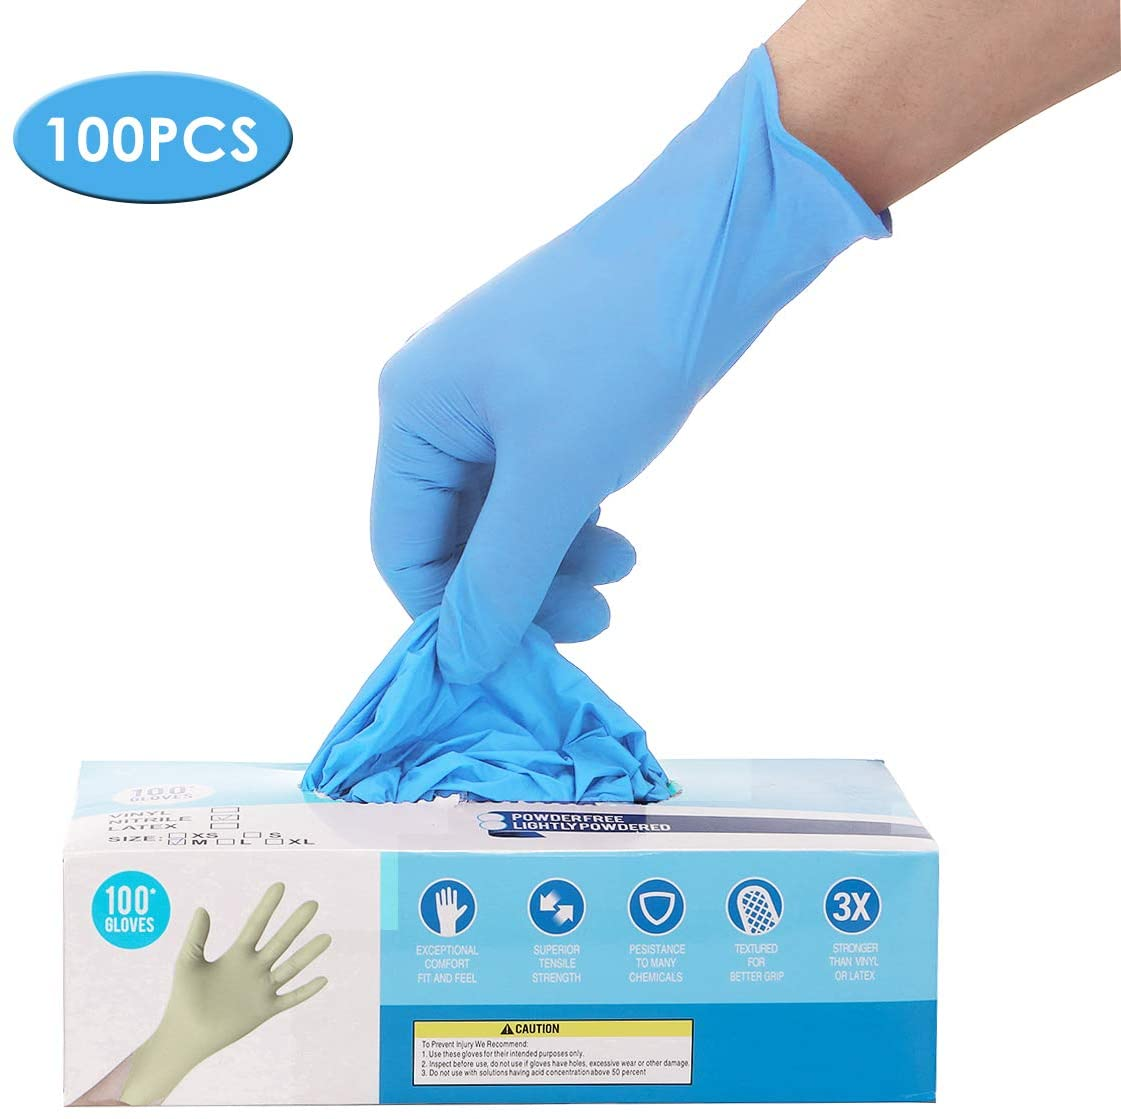 IPRee® 100 stk Nitril engangshandsker pulverfri gummi latexfri sterile handsker til picnic mad hygiejne Husrensning